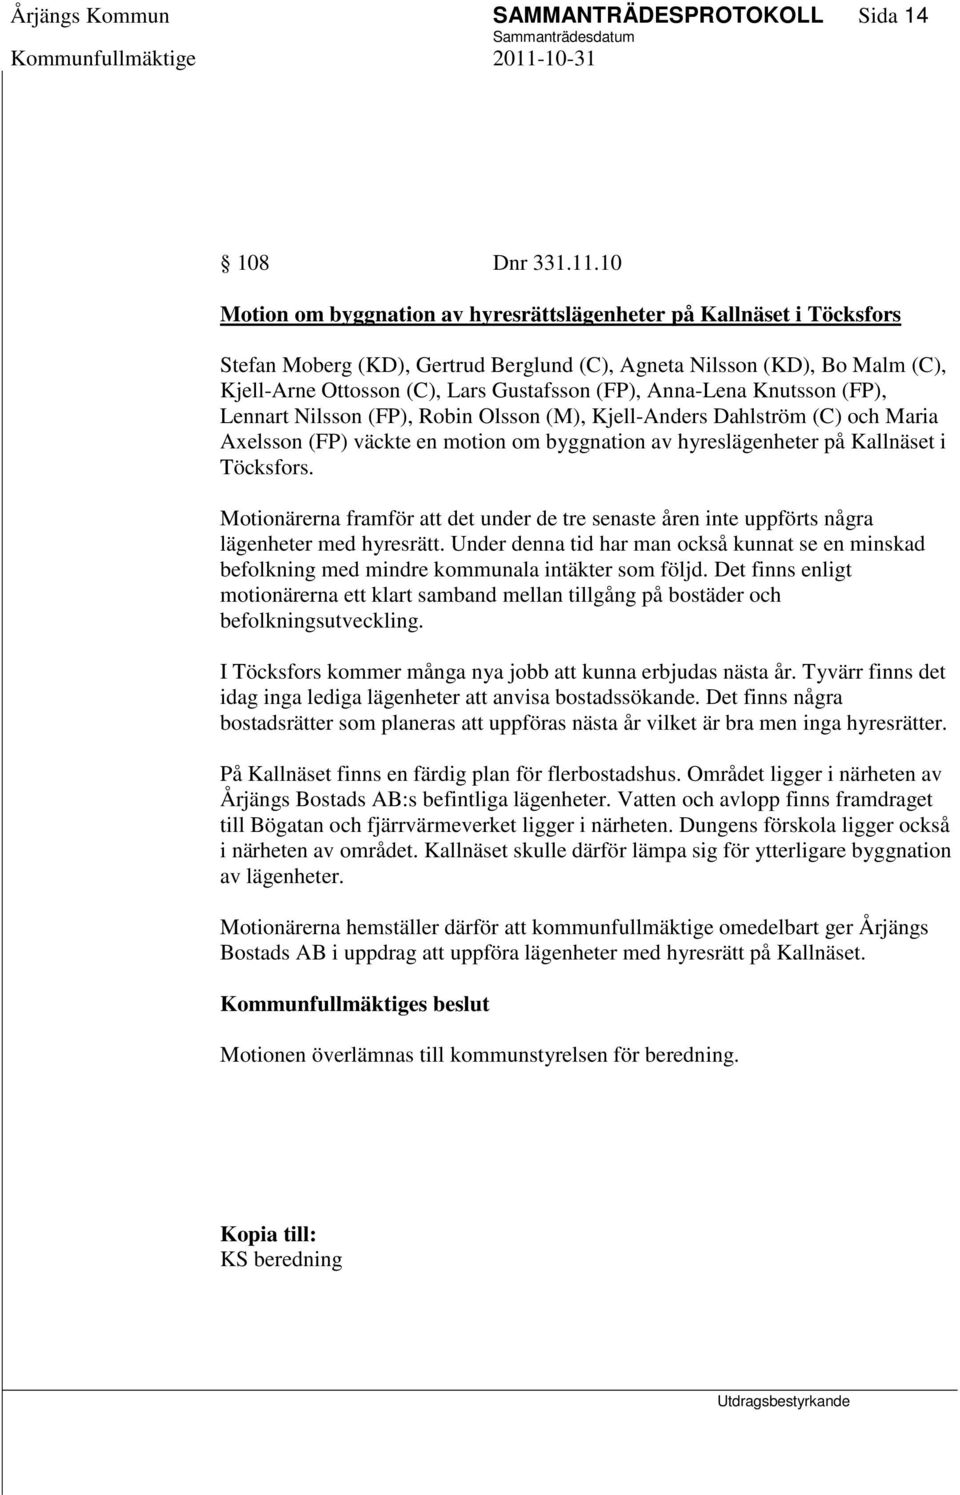 Anna-Lena Knutsson (FP), Lennart Nilsson (FP), Robin Olsson (M), Kjell-Anders Dahlström (C) och Maria Axelsson (FP) väckte en motion om byggnation av hyreslägenheter på Kallnäset i Töcksfors.